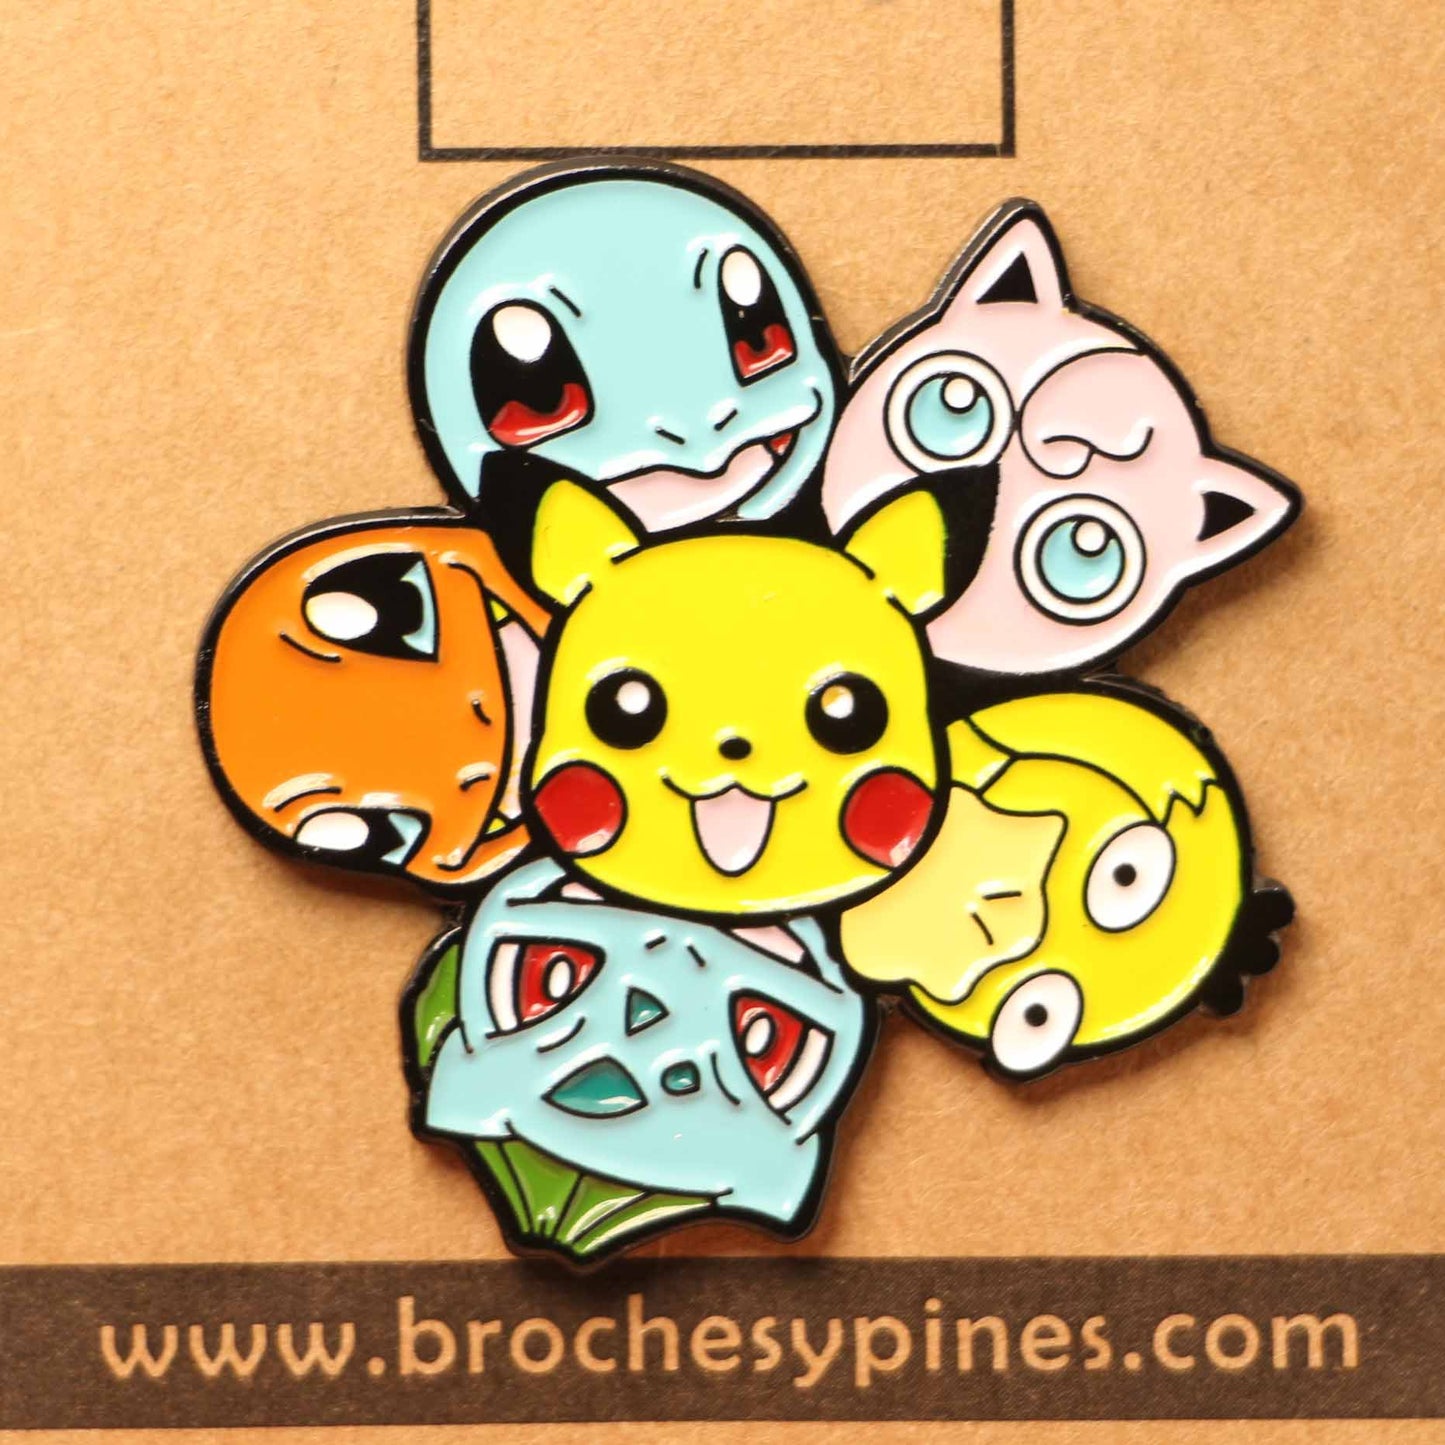 Pin "Poke Friends" - Pokémon